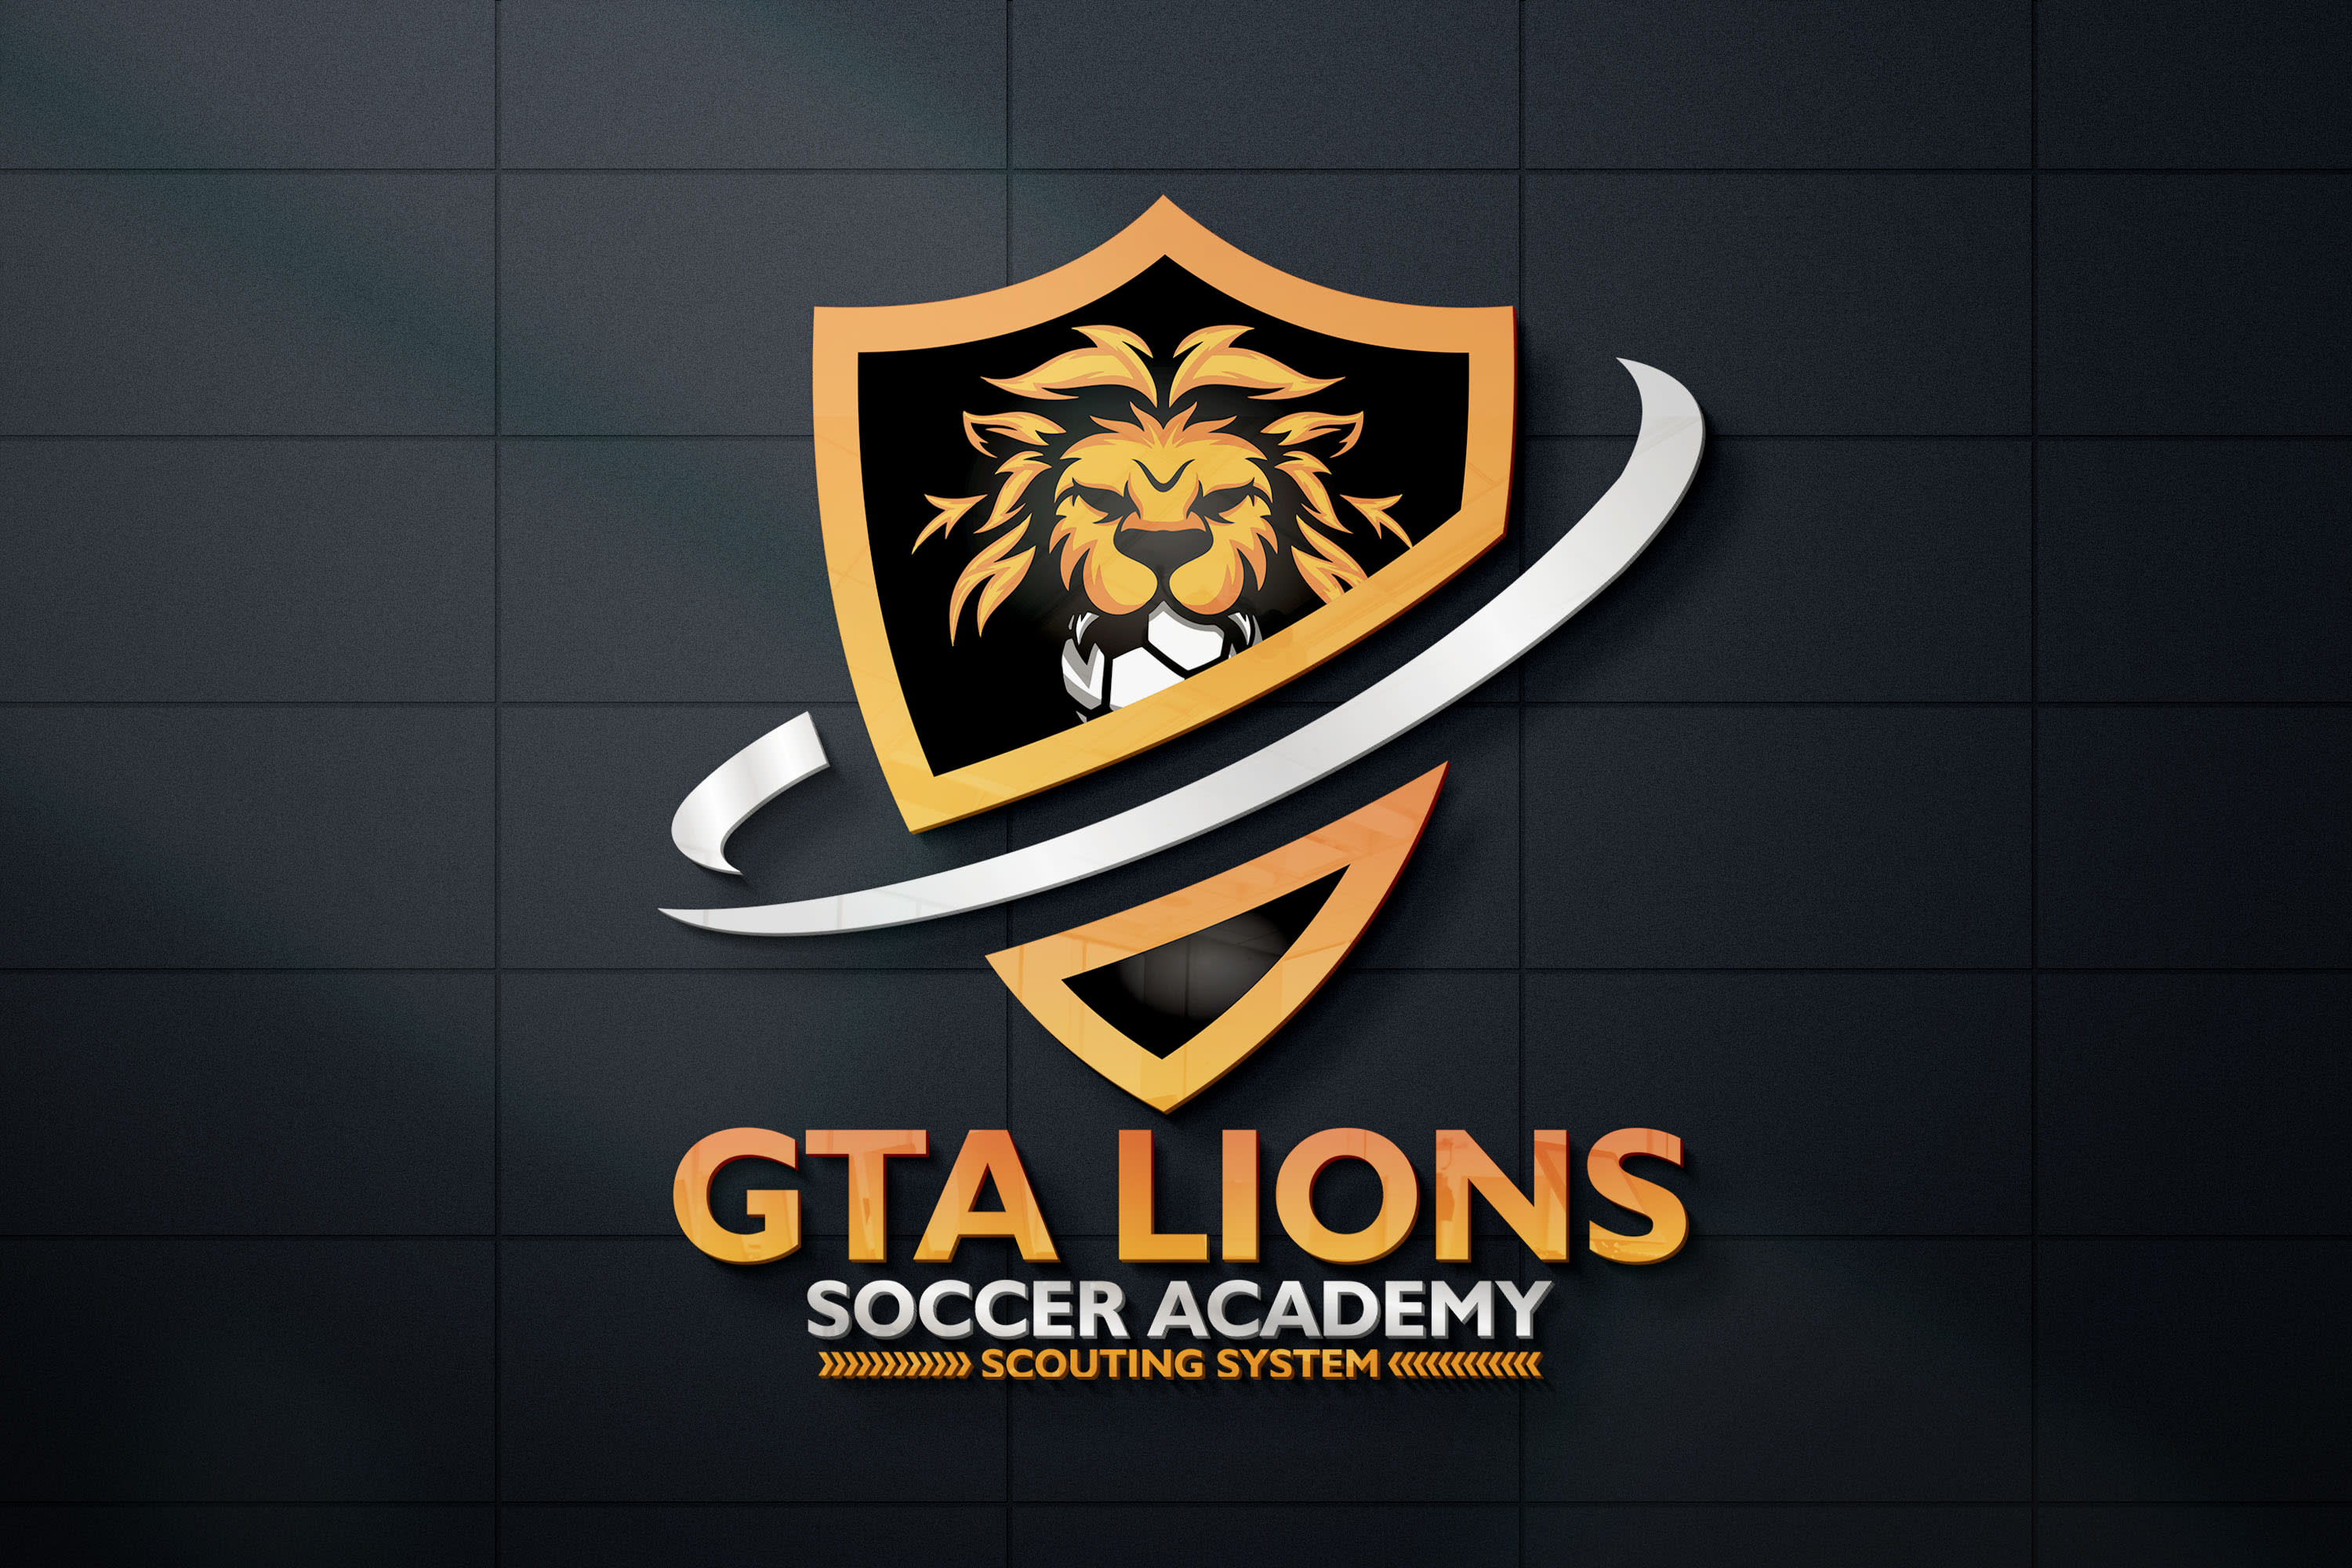 GTA LIONS SOCCER ACADEMY